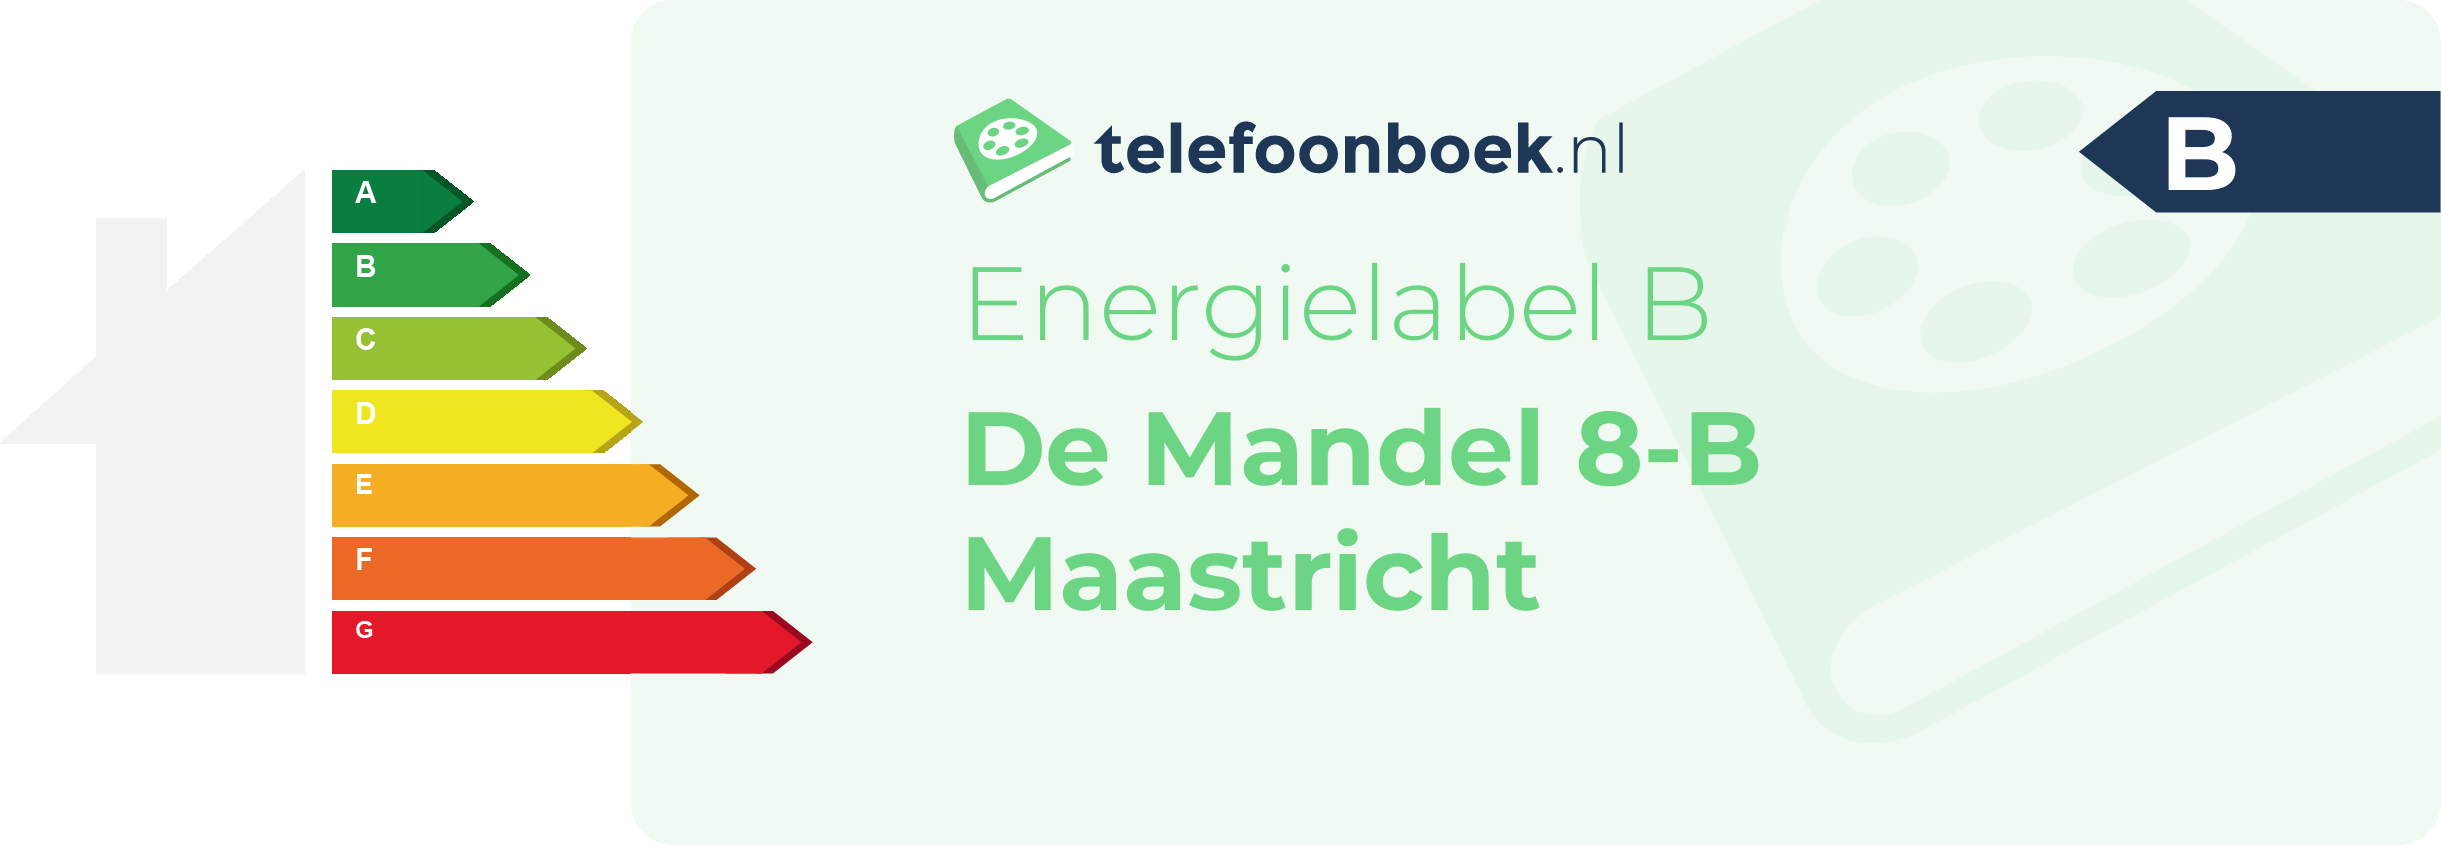 Energielabel De Mandel 8-B Maastricht